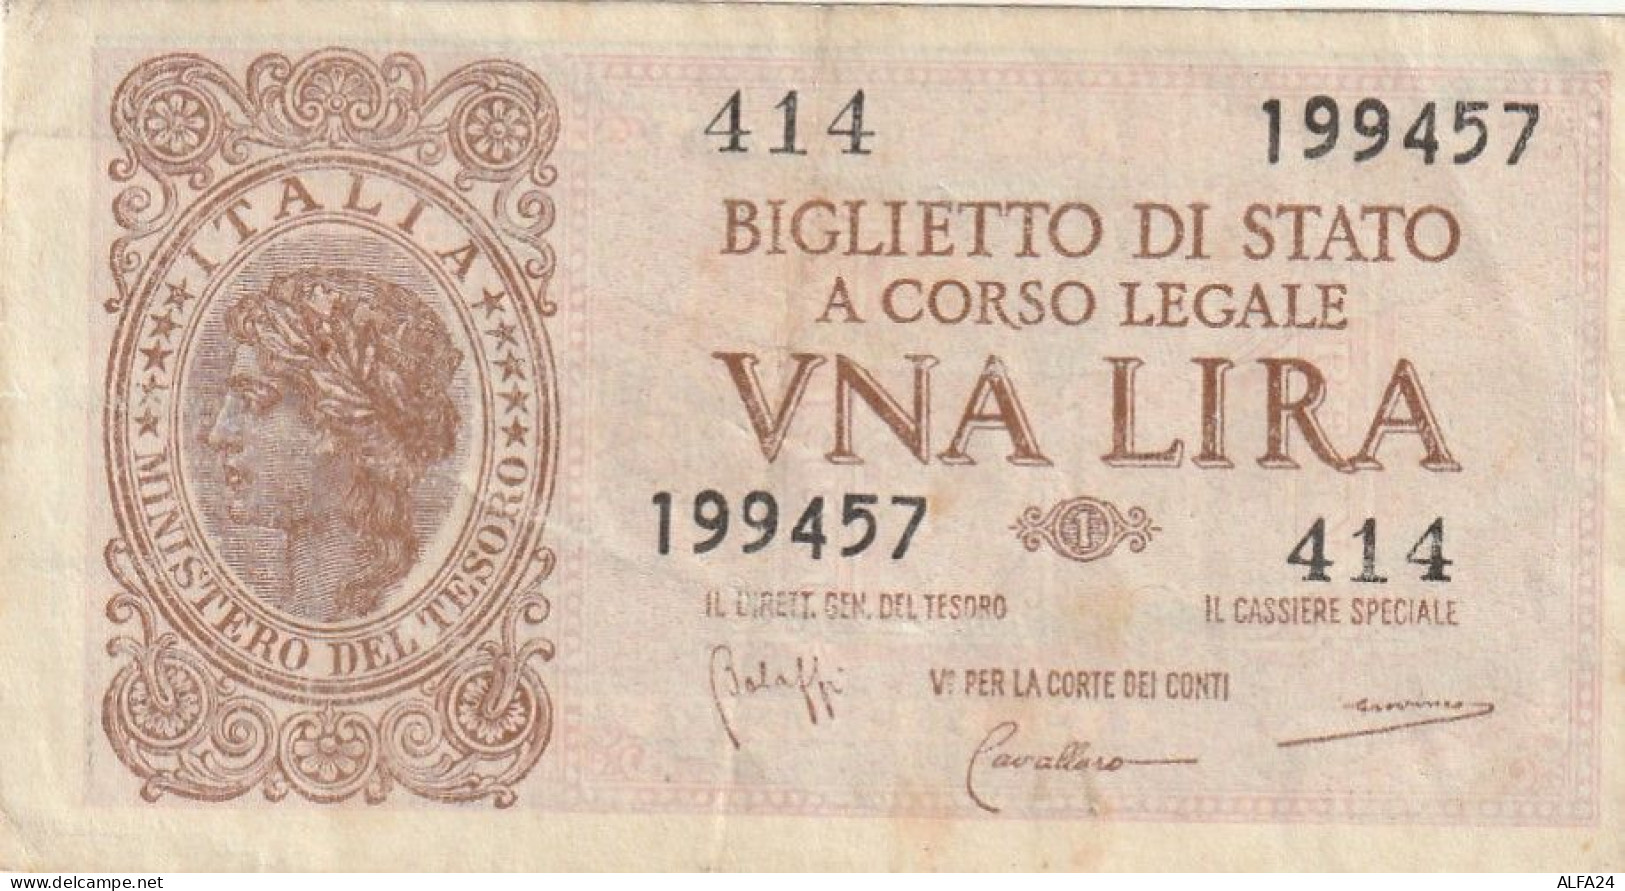 BANCONOTA BIGLIETTO DI STATO ITALIA 1 LIRA VF  (B_356 - Italia – 1 Lira